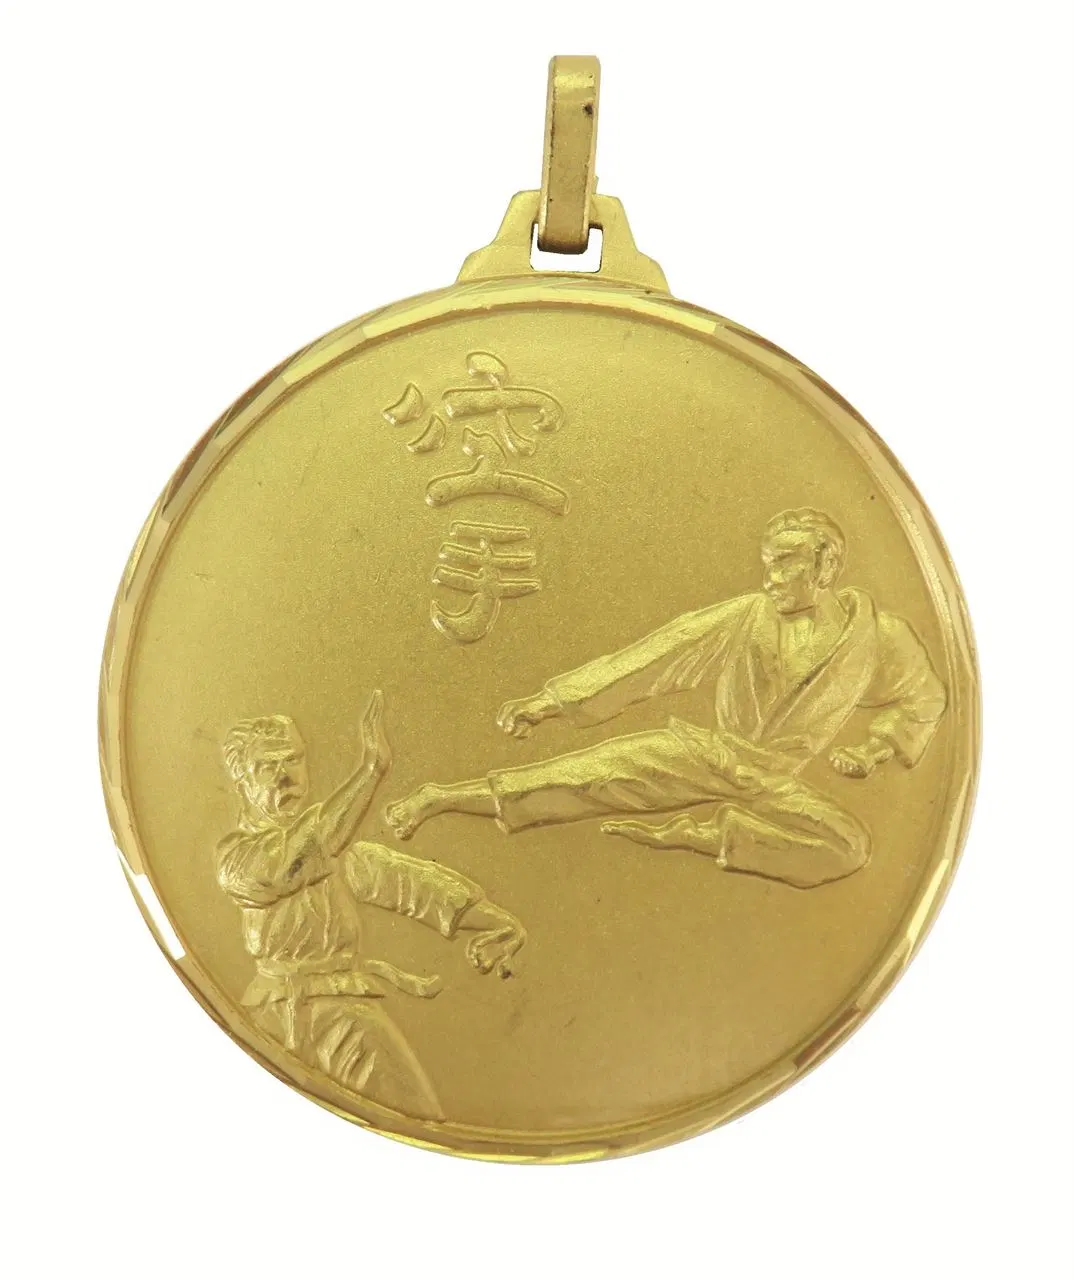 Custom Karate deportivo barato al por mayor de medalla medallas de metal con cinta de la medalla de Karate